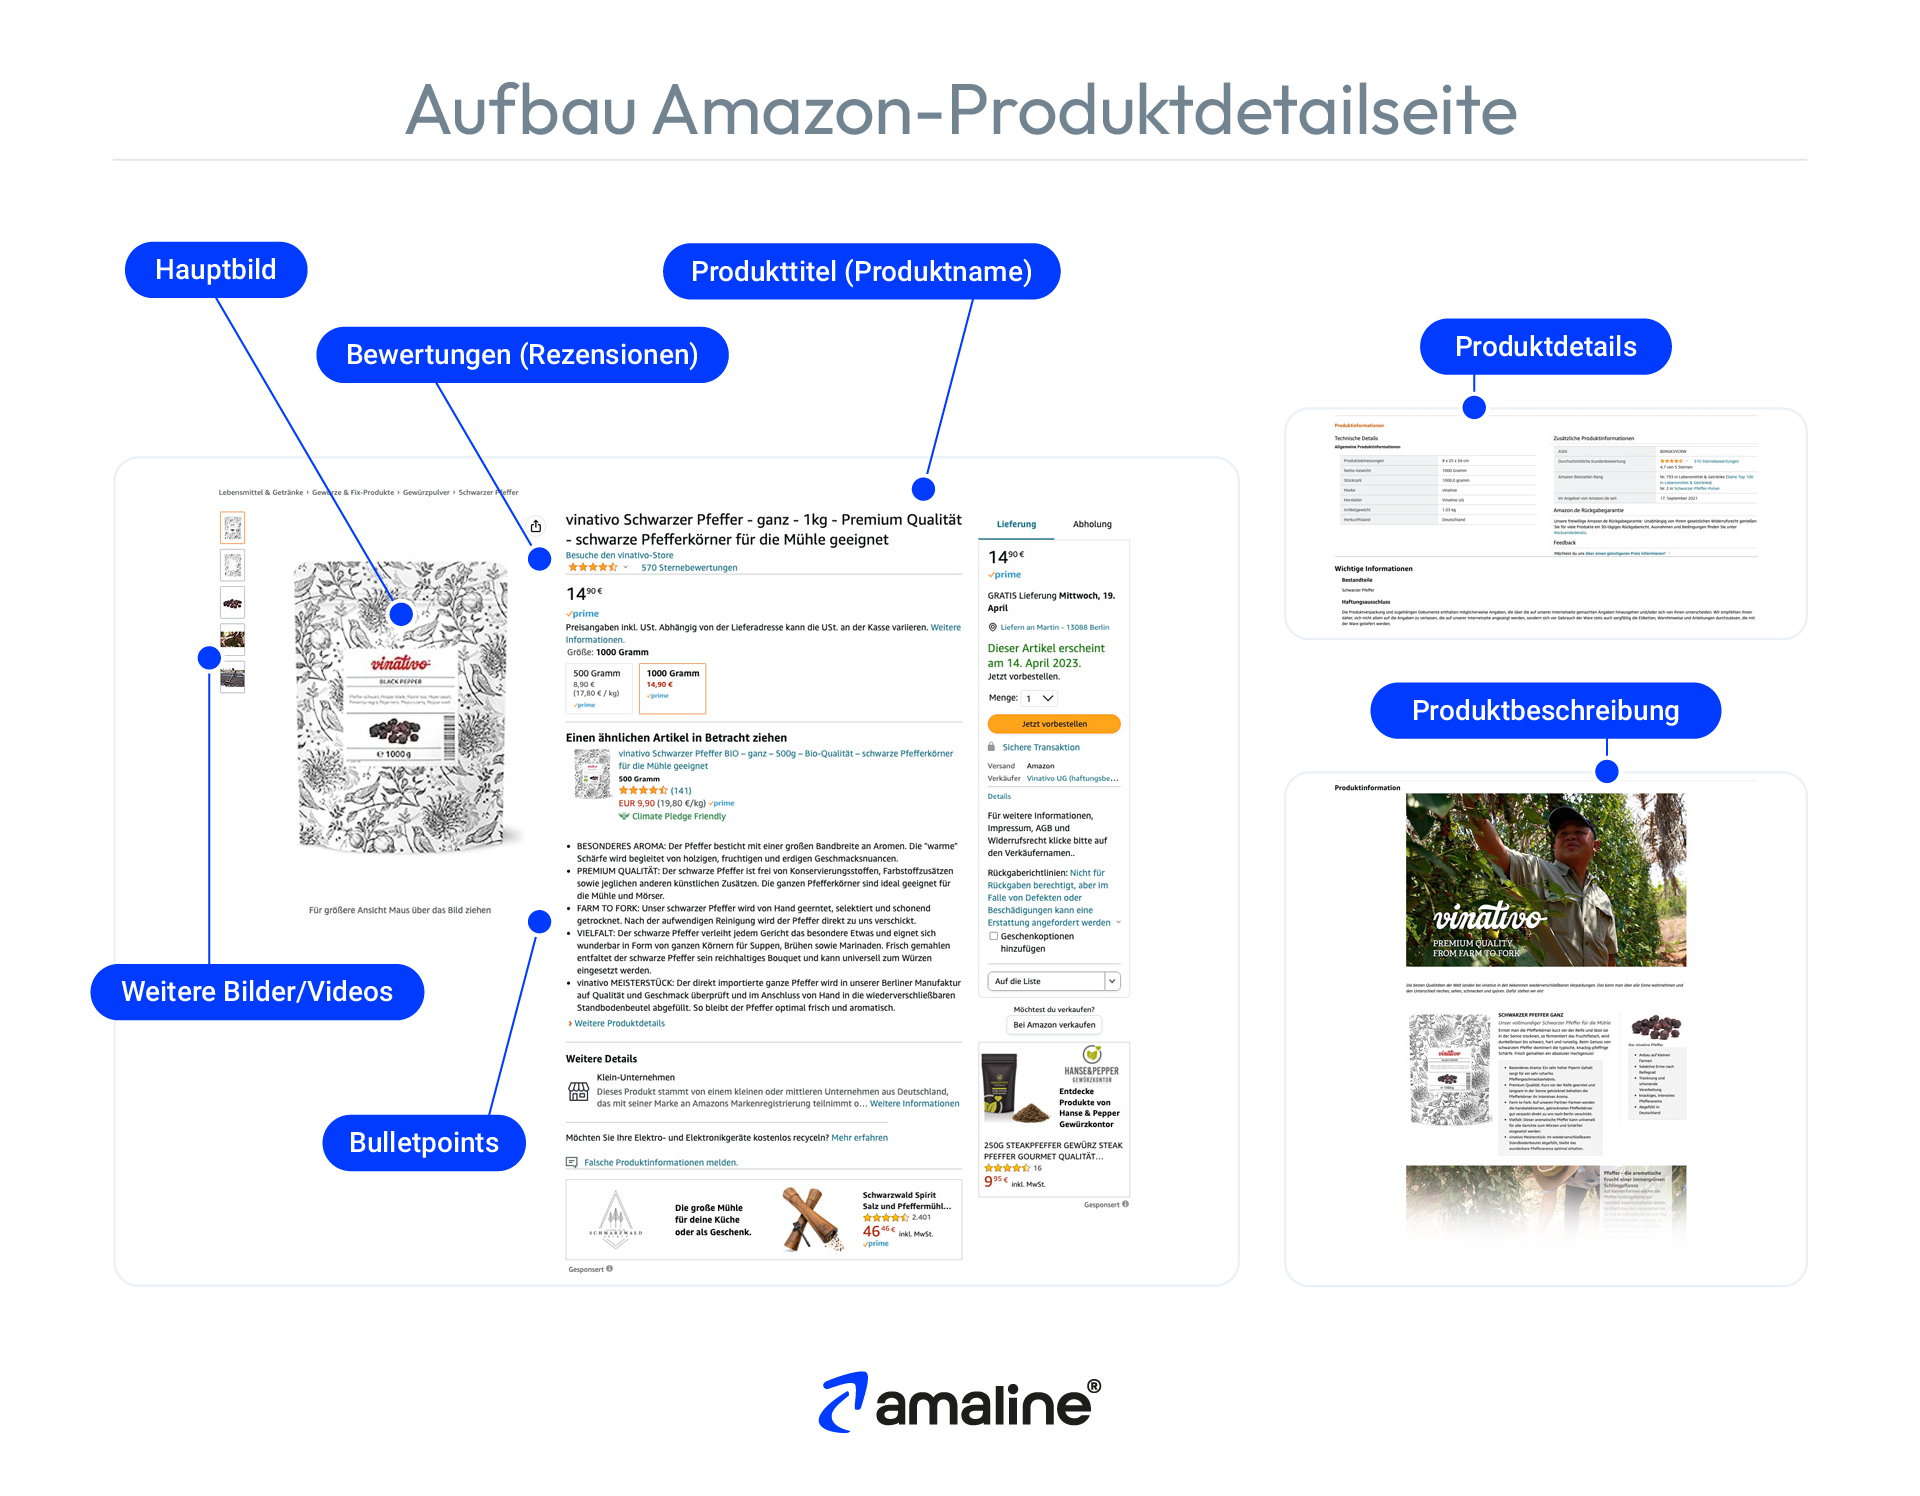 Die Grafik erklärt, wie eine Amazon Produktdetailseite aufgebaut ist und aus welchen Elementen diese besteht.